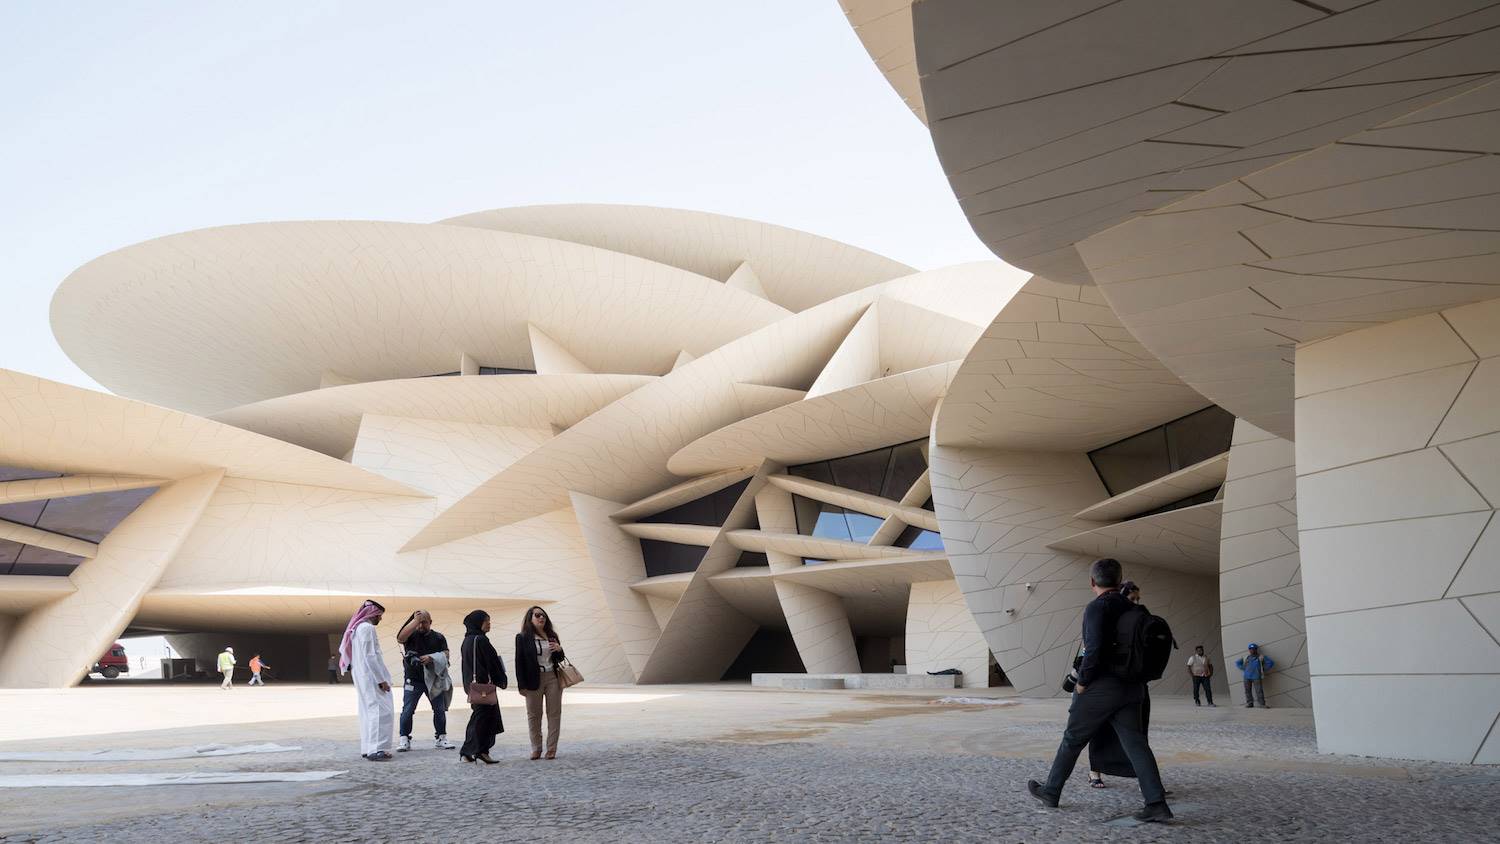 El recién inaugurado Museo Nacional de Qatar imita la formación mineral característica de la zona "La Rosa del Desierto"